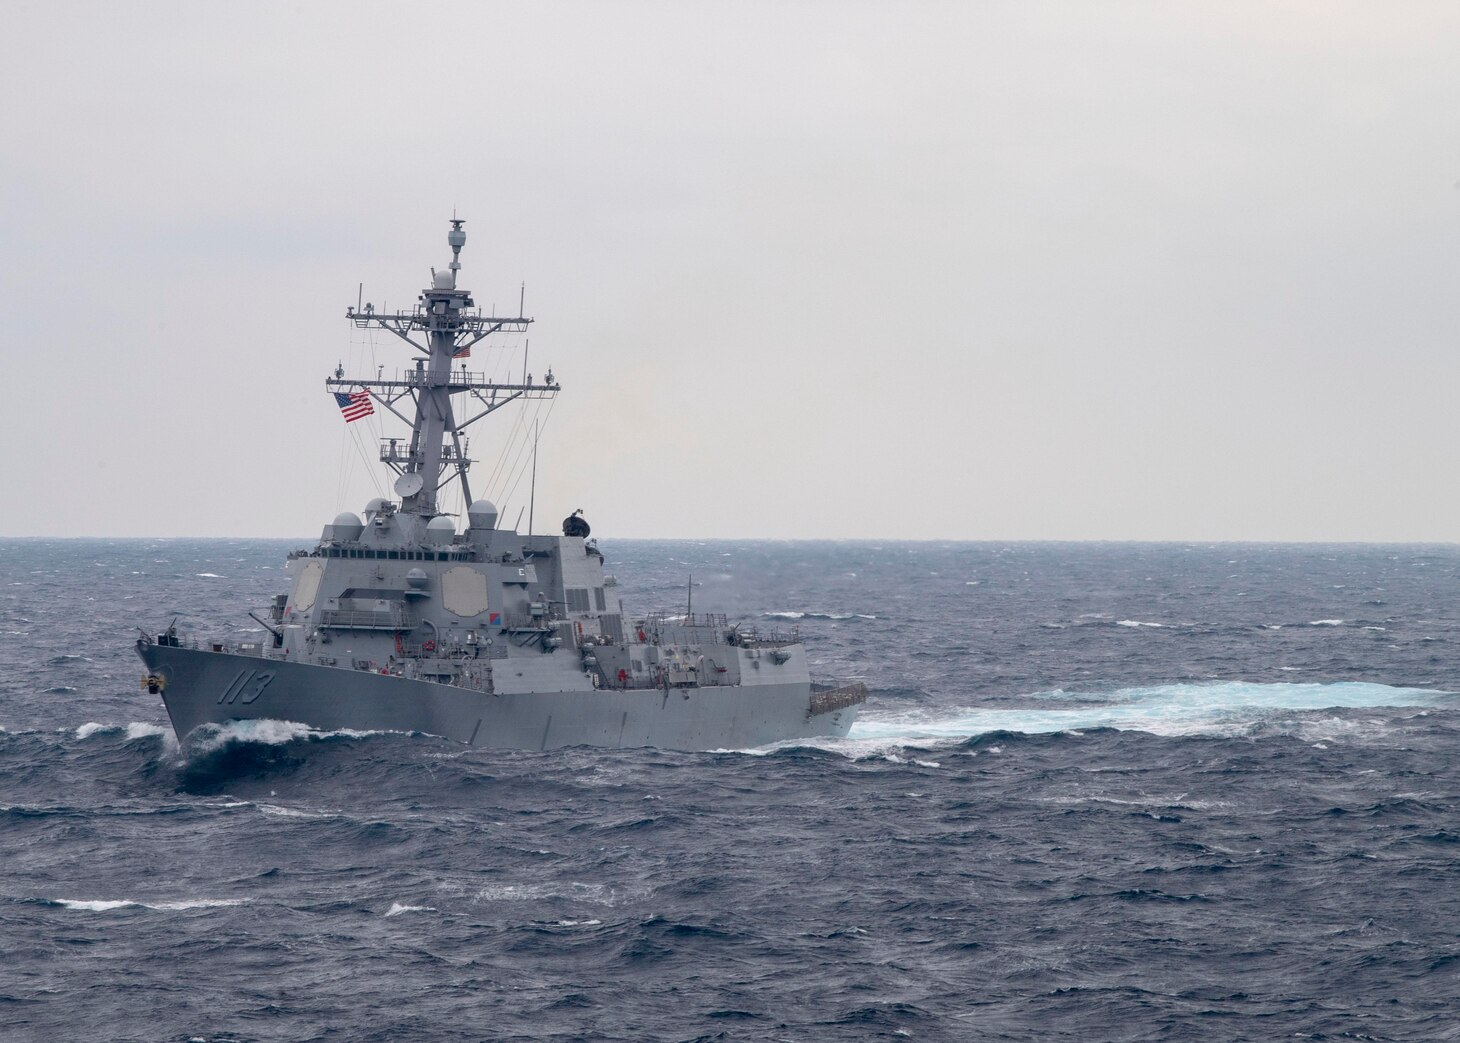 USS Theodore Roosevelt (CVN 71) is underway in the Pacific Ocean.